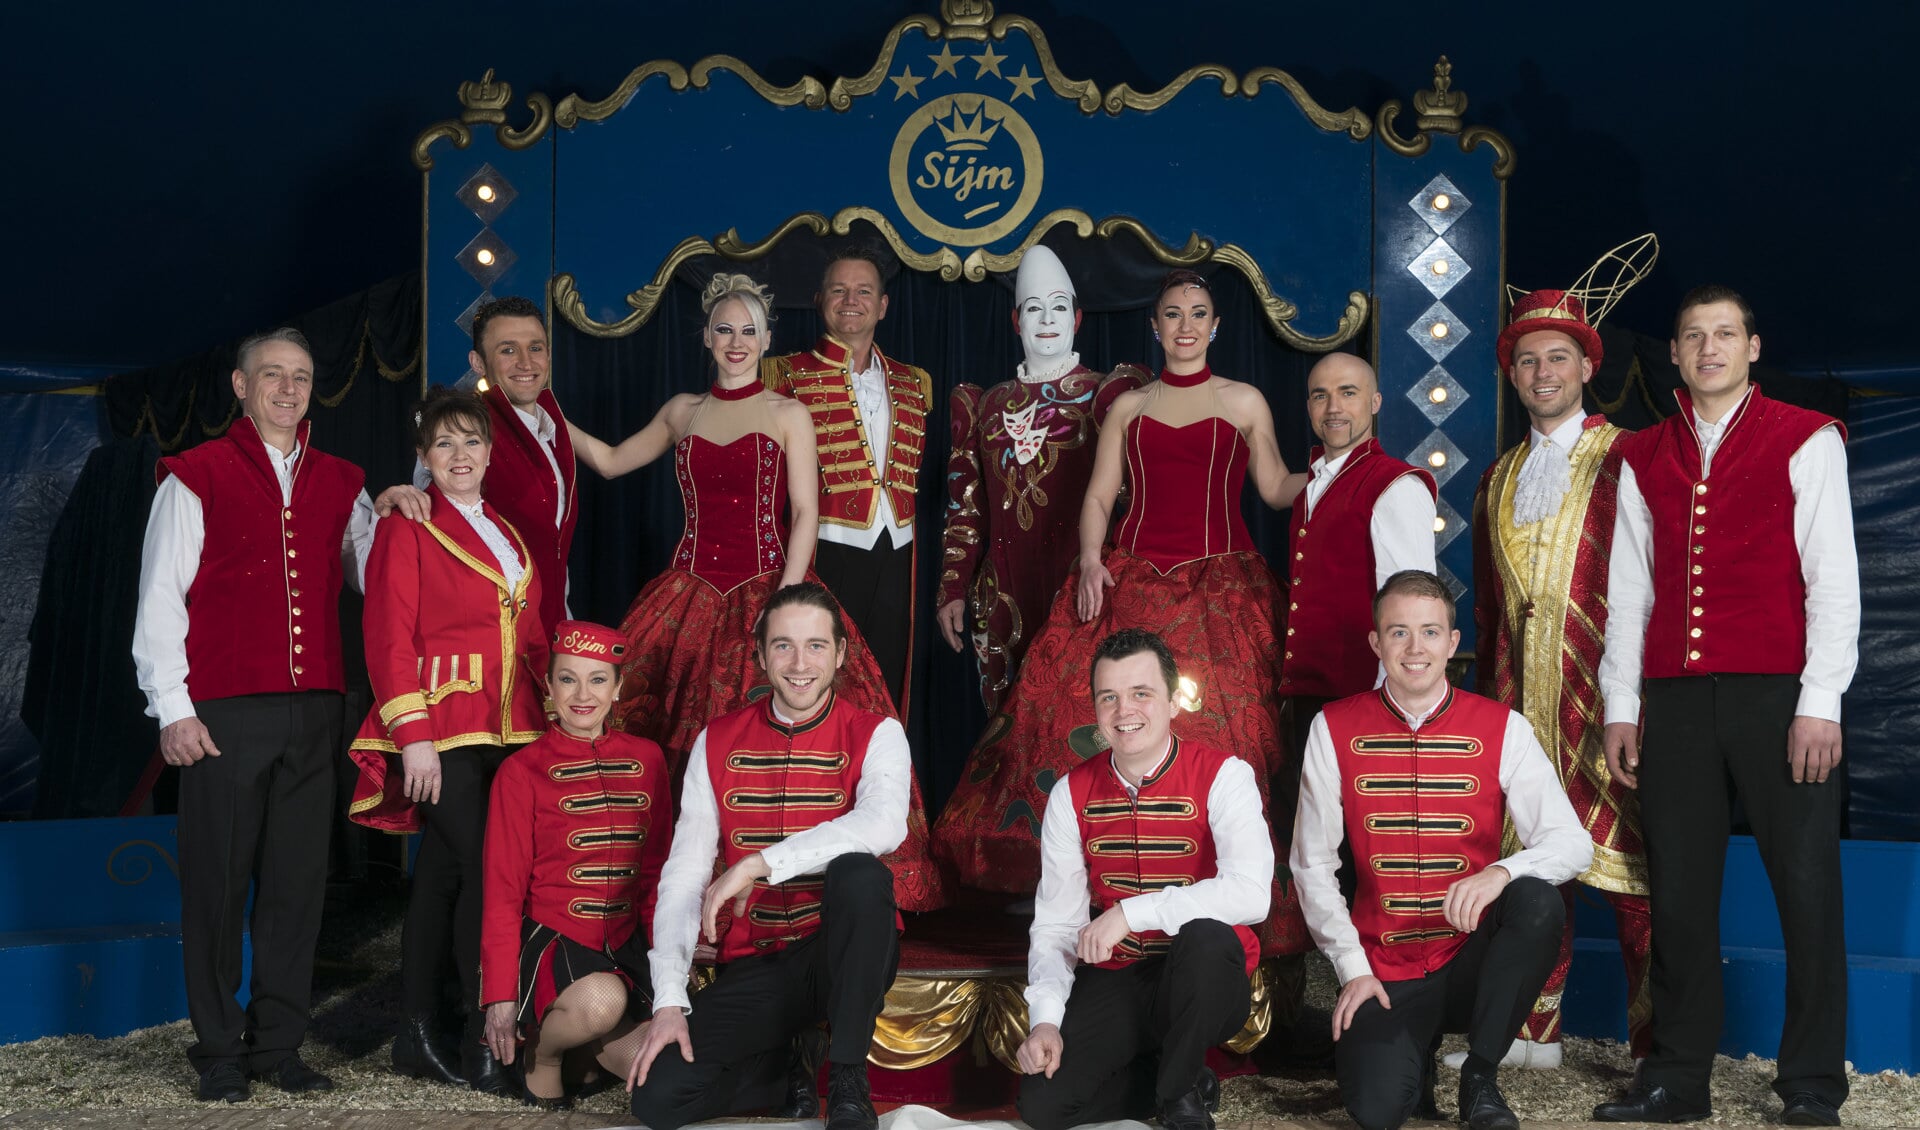 Show en crew van Circus Sijm dat van 27 juni tot en met 4 juli in Soest optreedt.